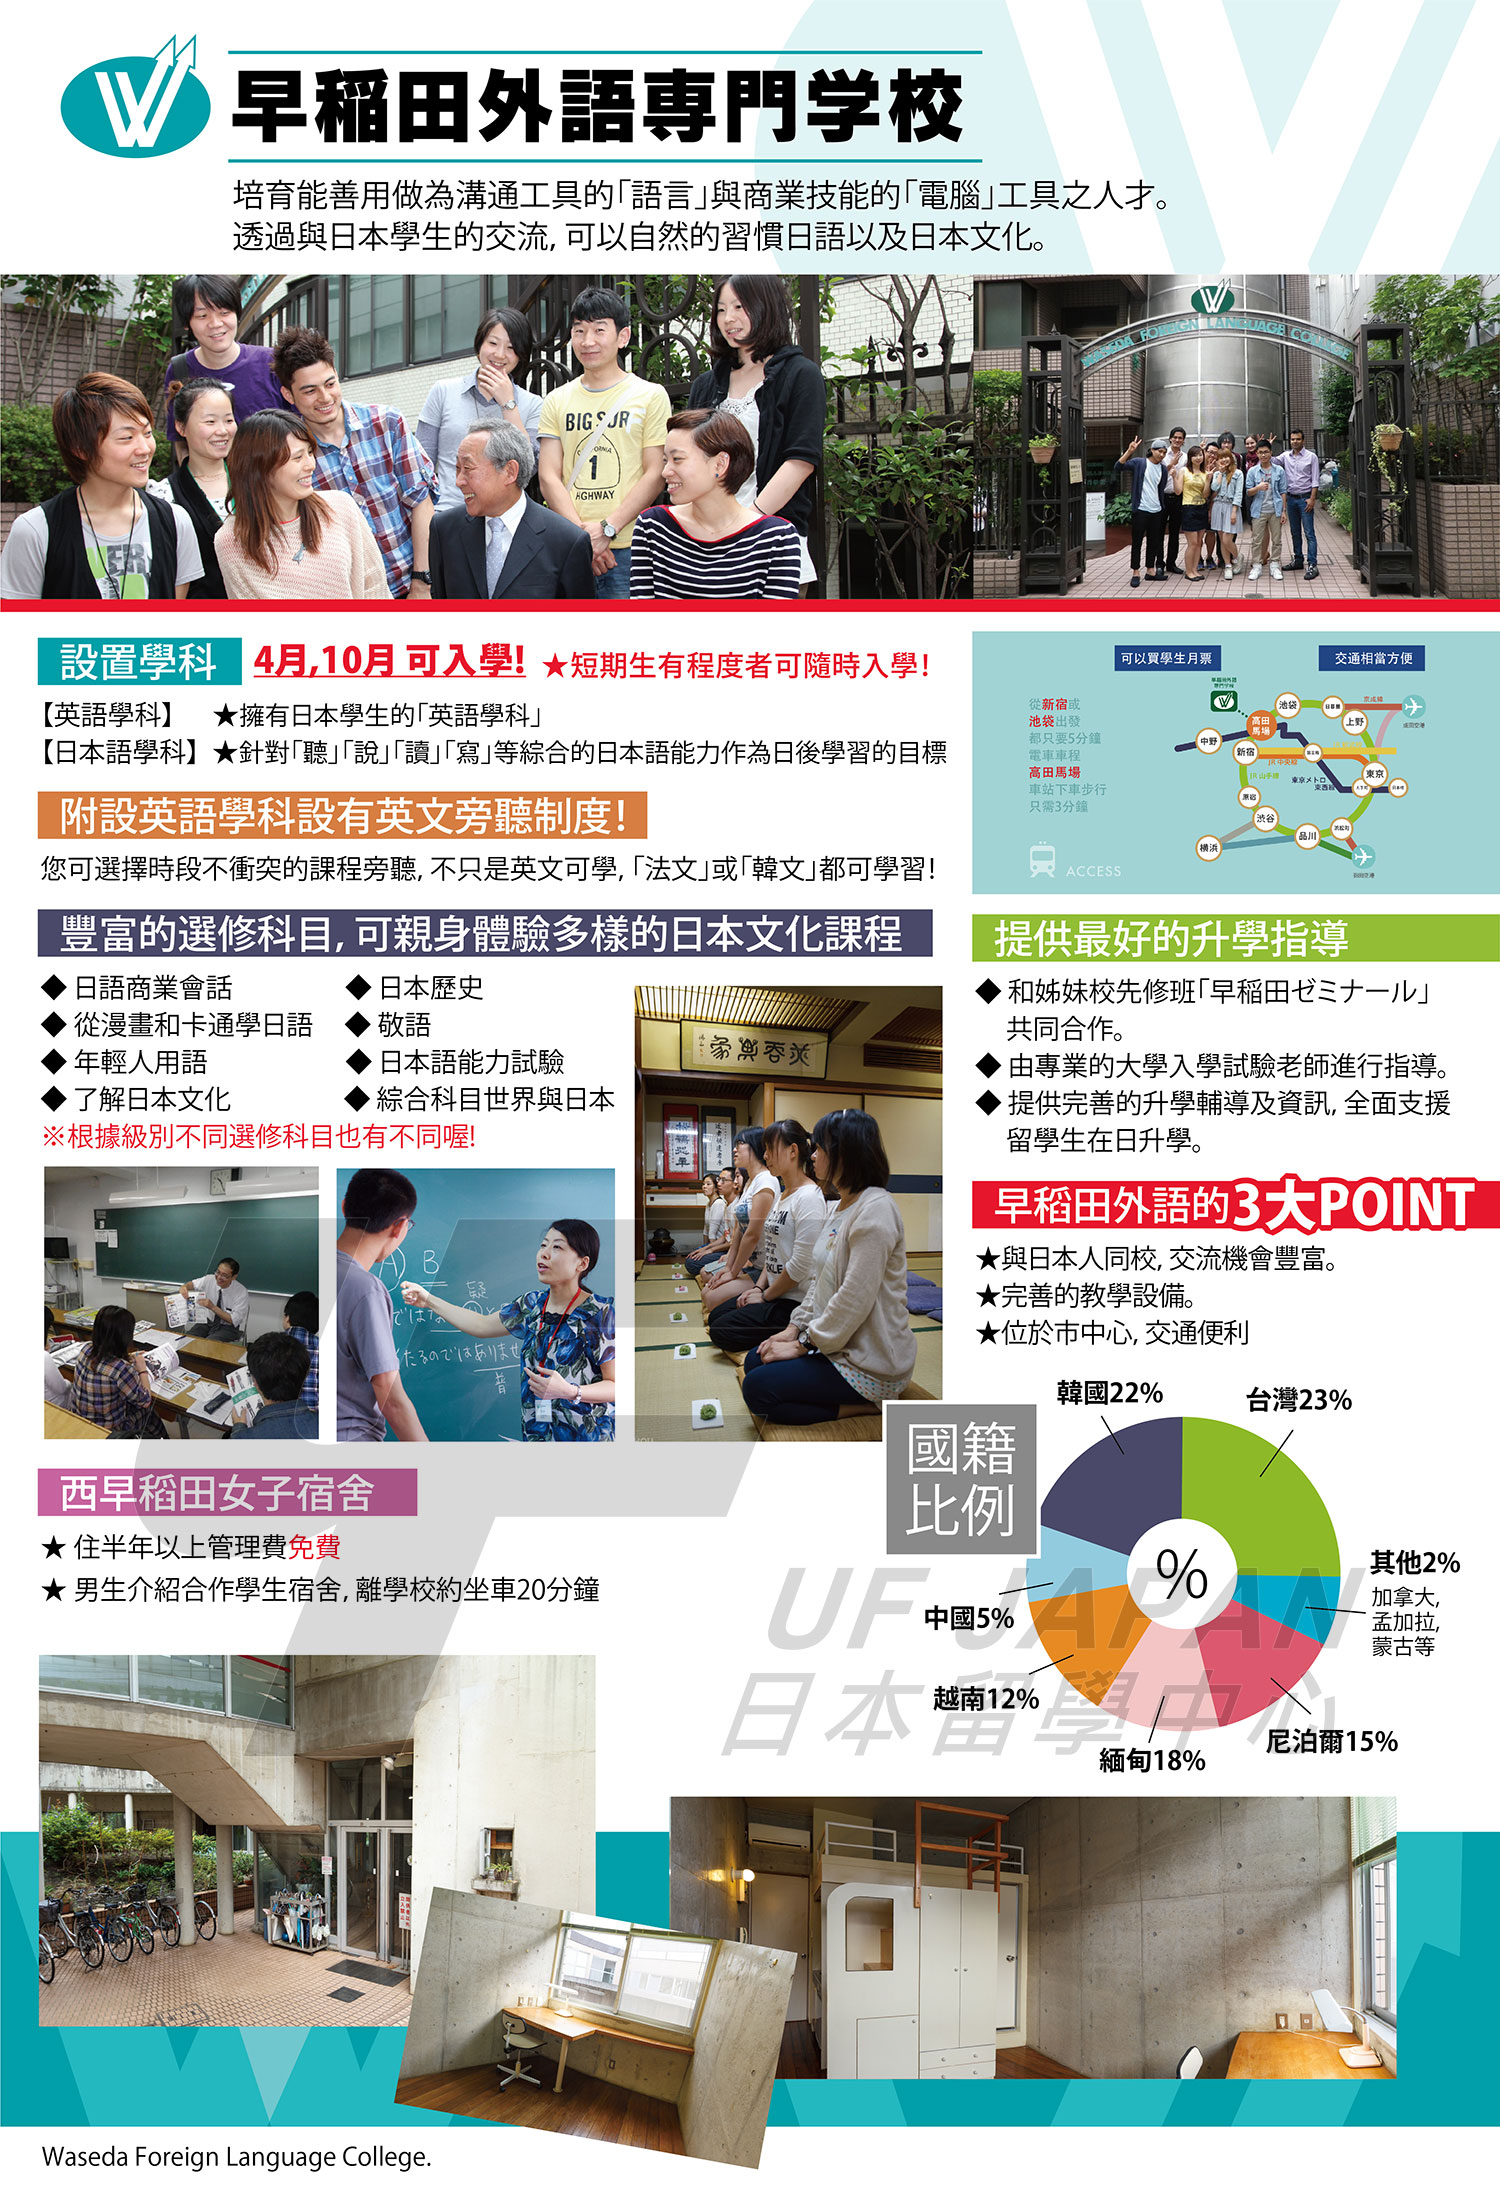 2016日本留學展參展單位-東京中央日本語學院